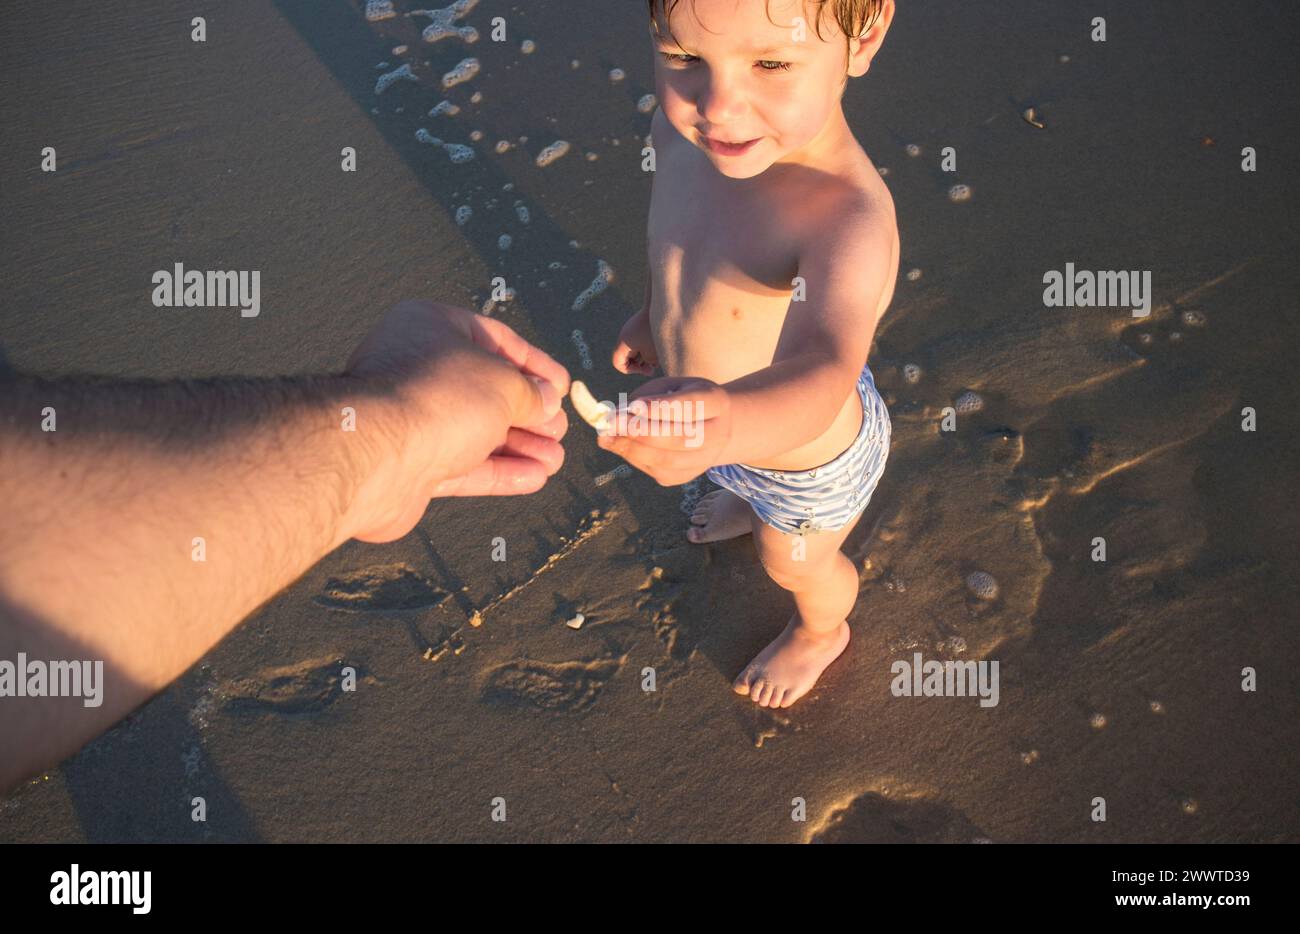 Das Baby bietet seinem Vater am Strand eine Muschel an. Überkopfaufnahme Stockfoto